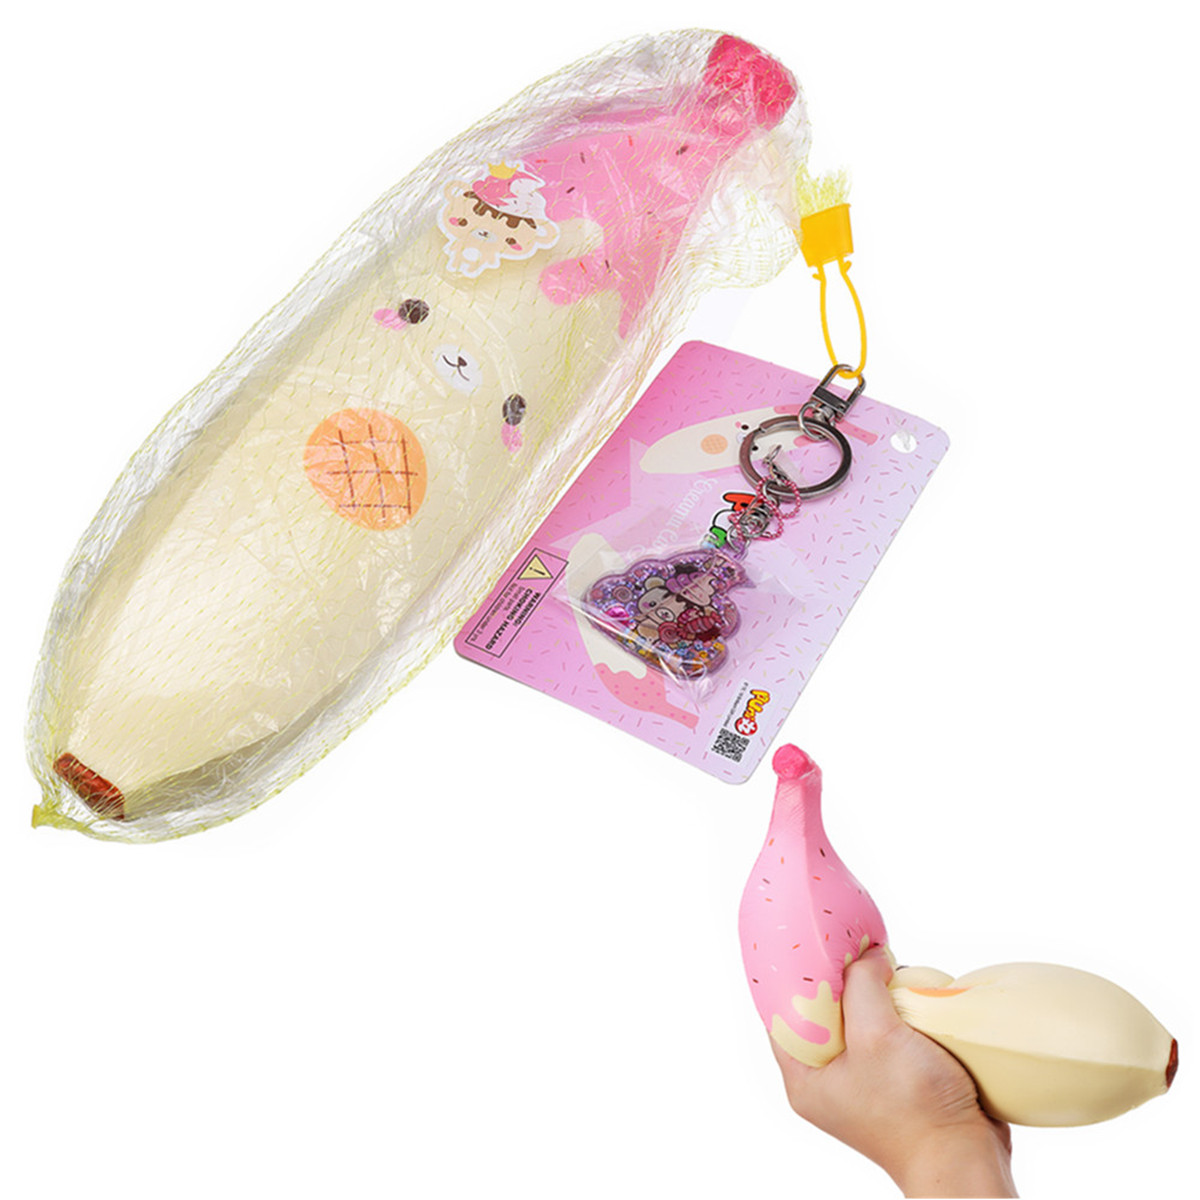 

Puni Maru Giant Banana Squishy Лицензированный 35CM Огромный медленный рост с упаковкой Jumbo Toy